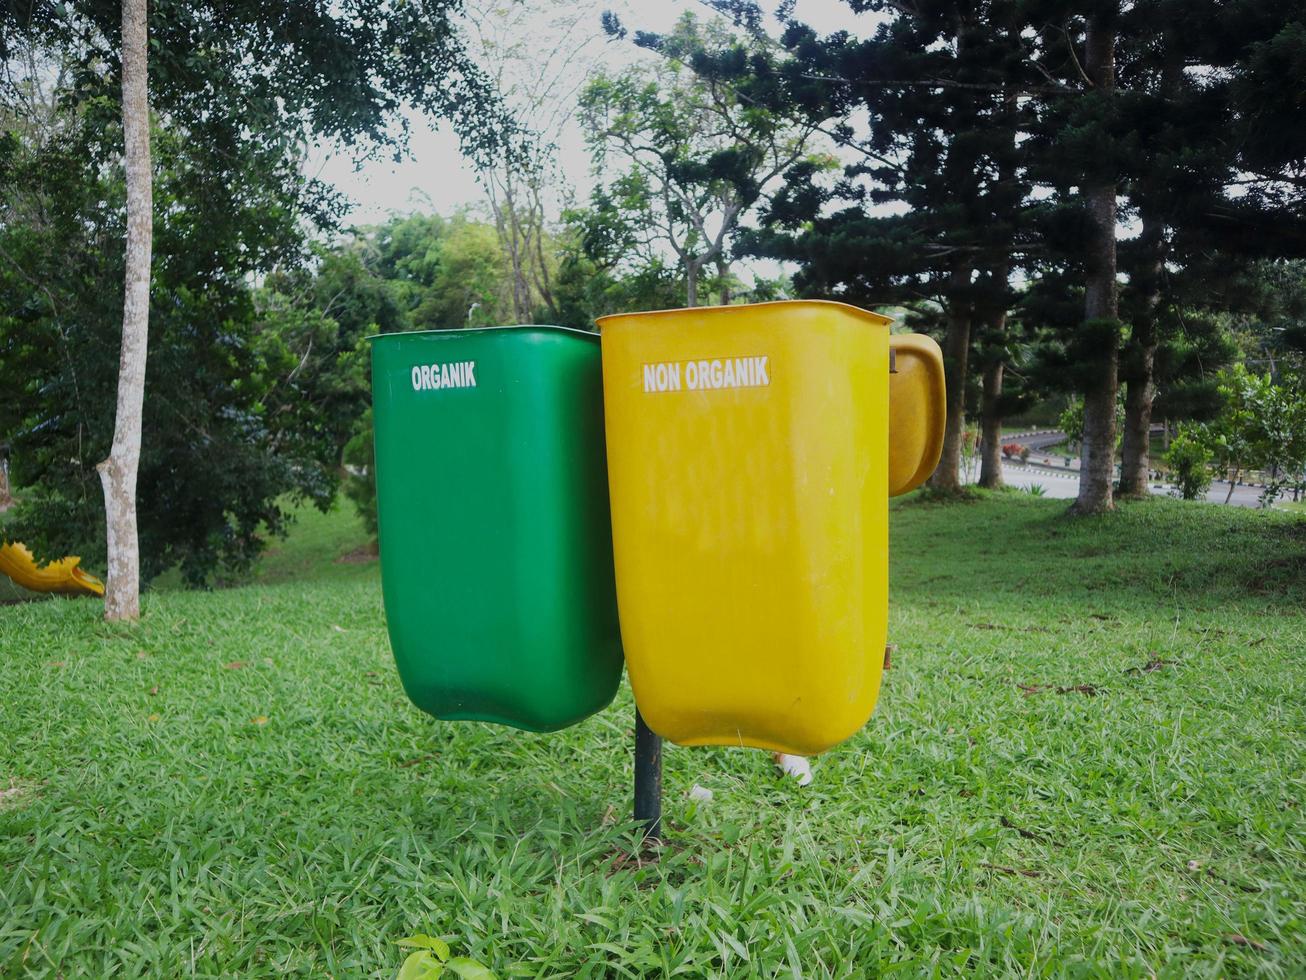 cassonetti gialli per i rifiuti inorganici che non possono essere riciclati e verdi per i rifiuti organici riciclabili. messo in un parco foto